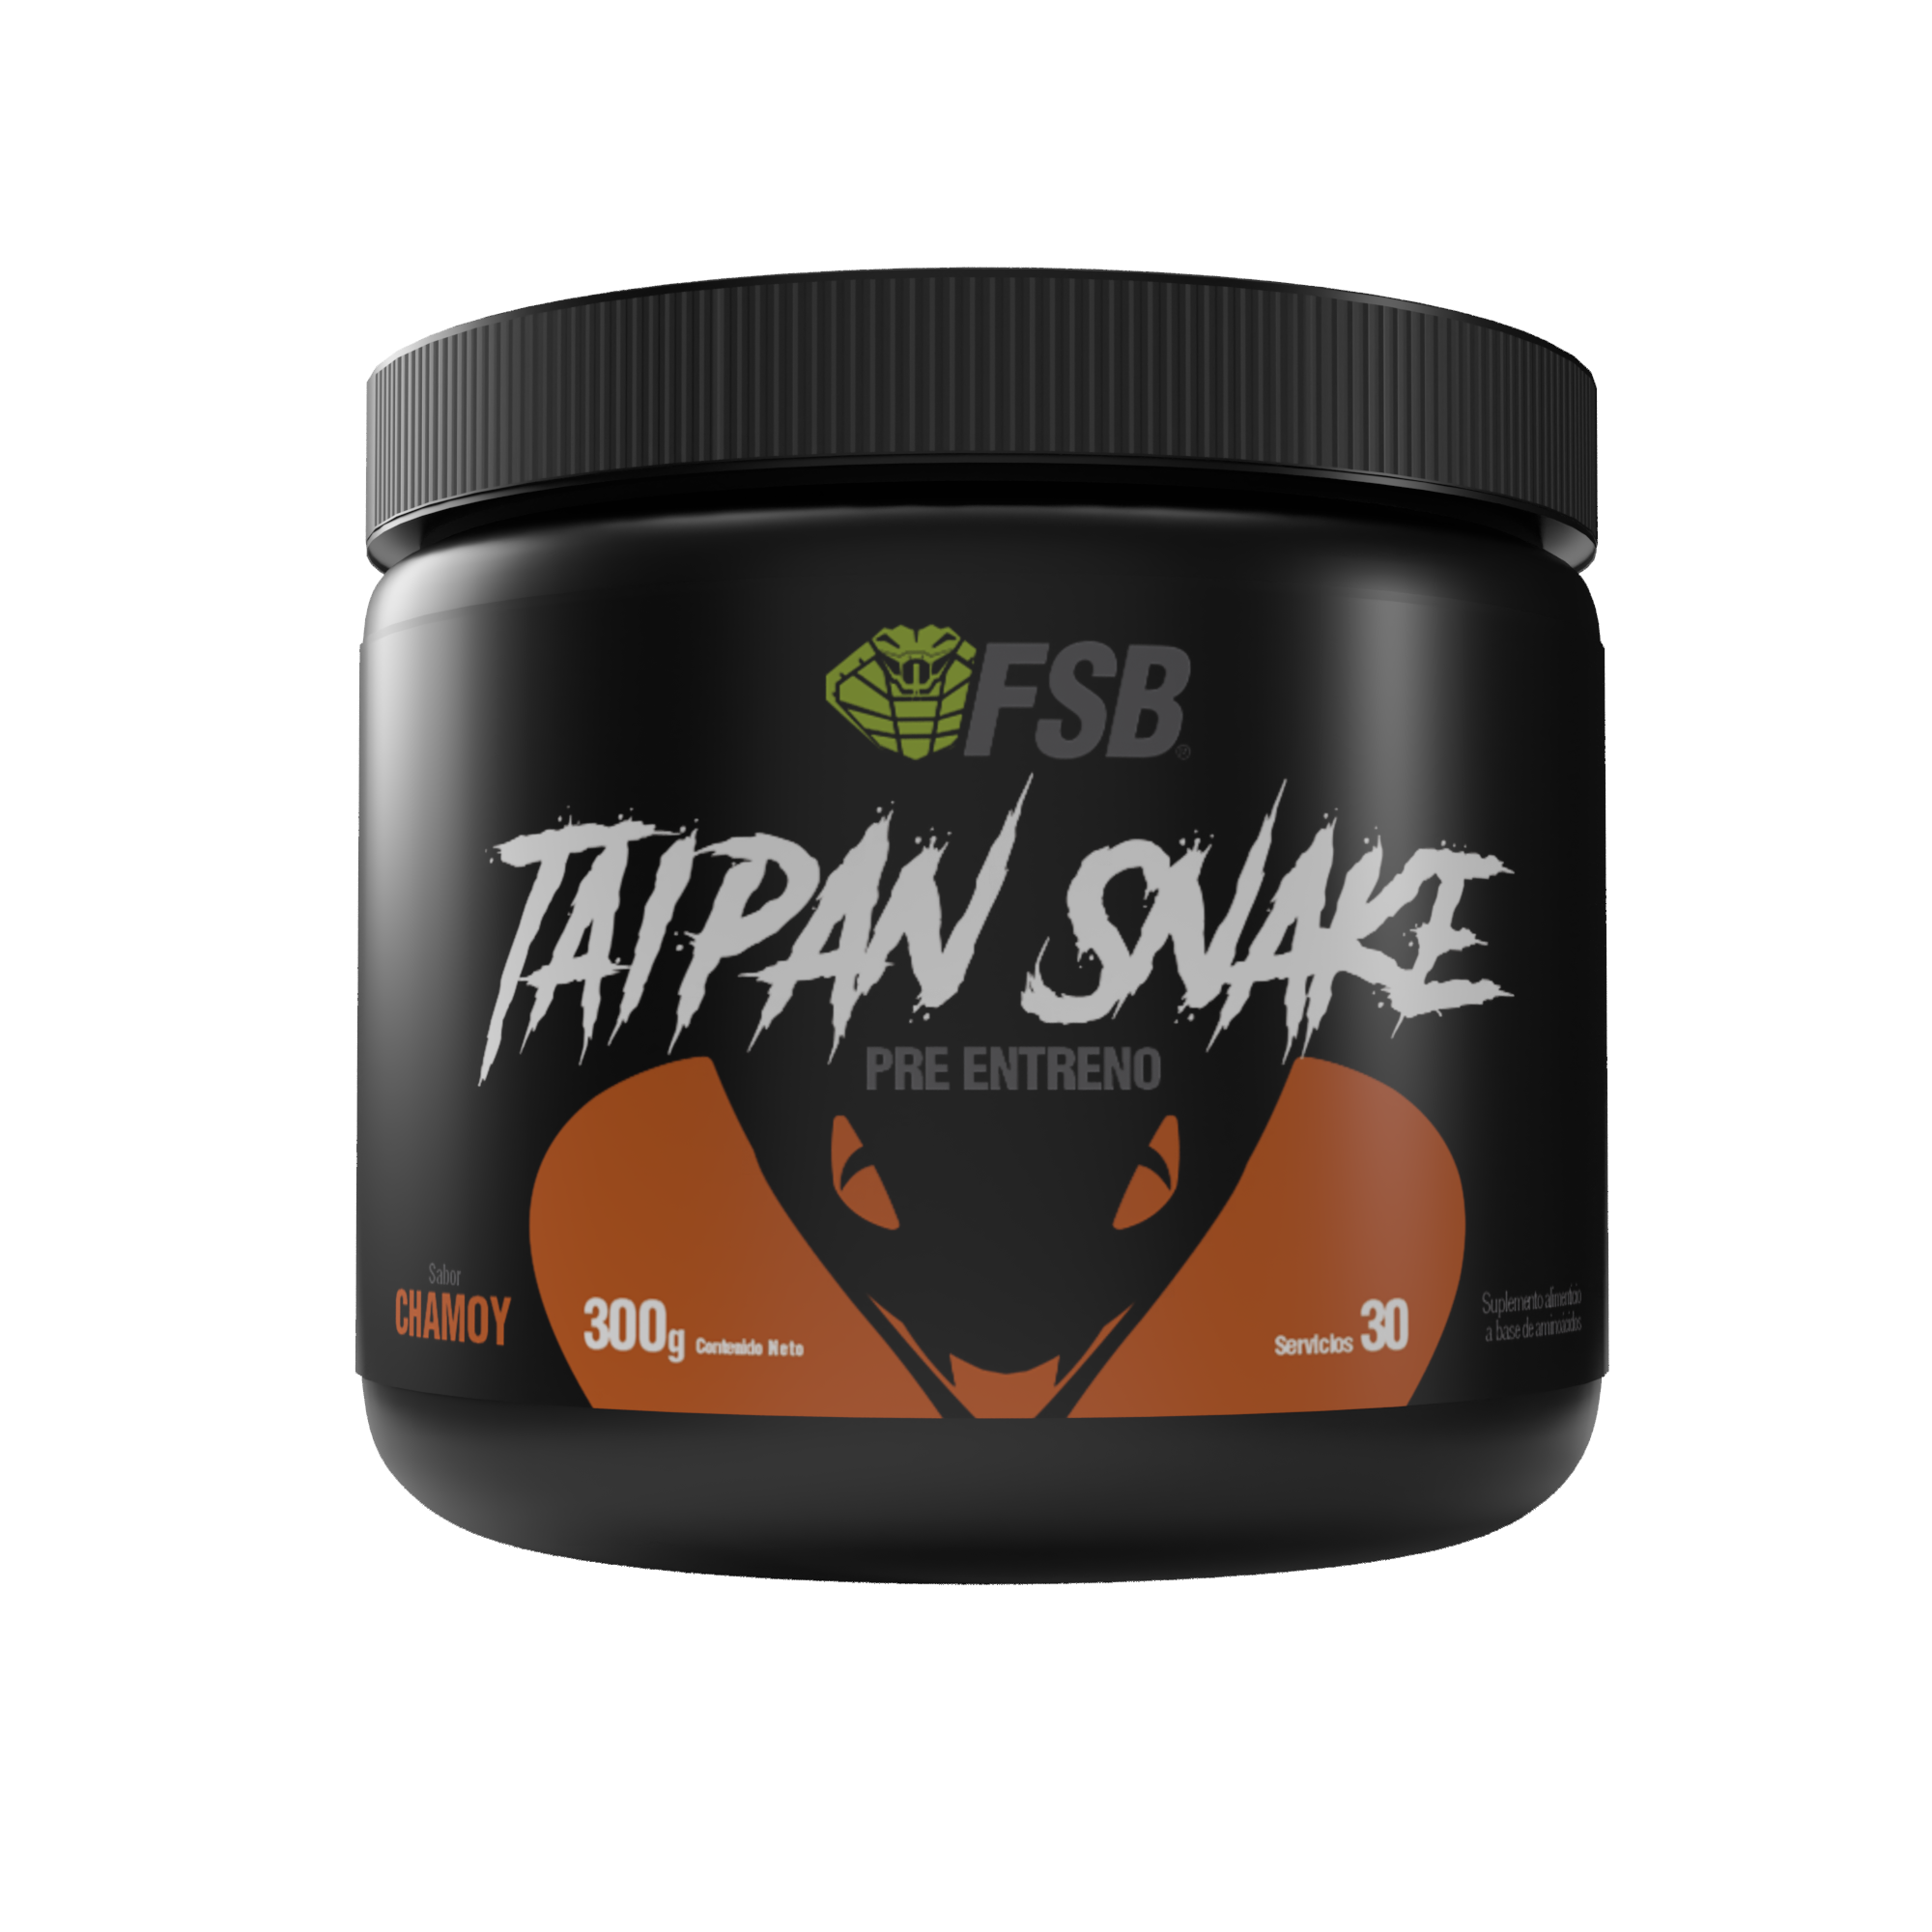 Pre Workout Taipan Snake